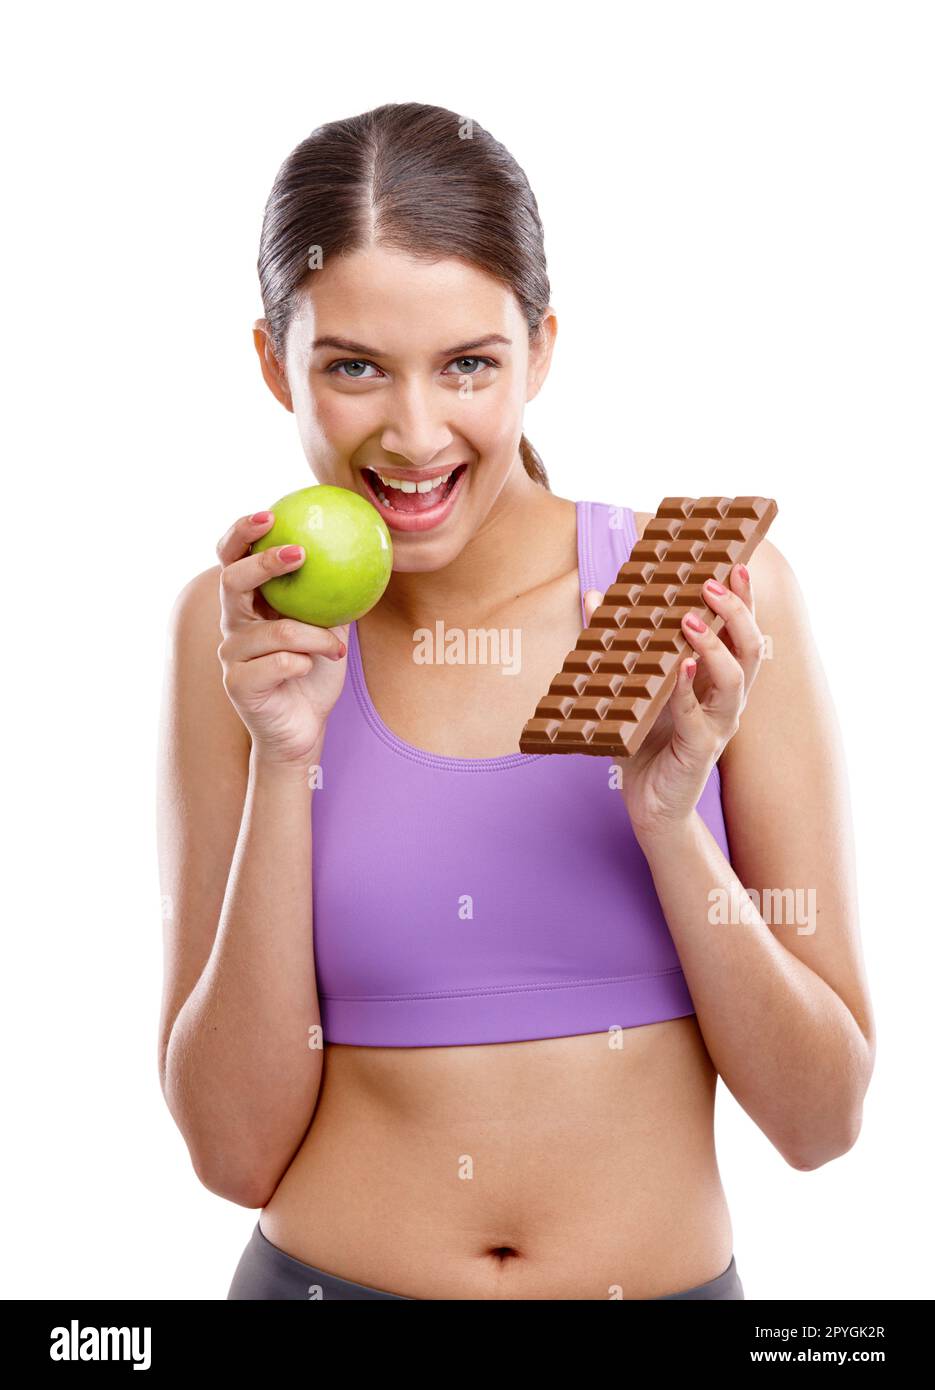 Du verdienst dir deinen Körper. Eine kräftige junge Frau, die einen Apfel in der einen Hand und Schokolade in der anderen hält. Stockfoto